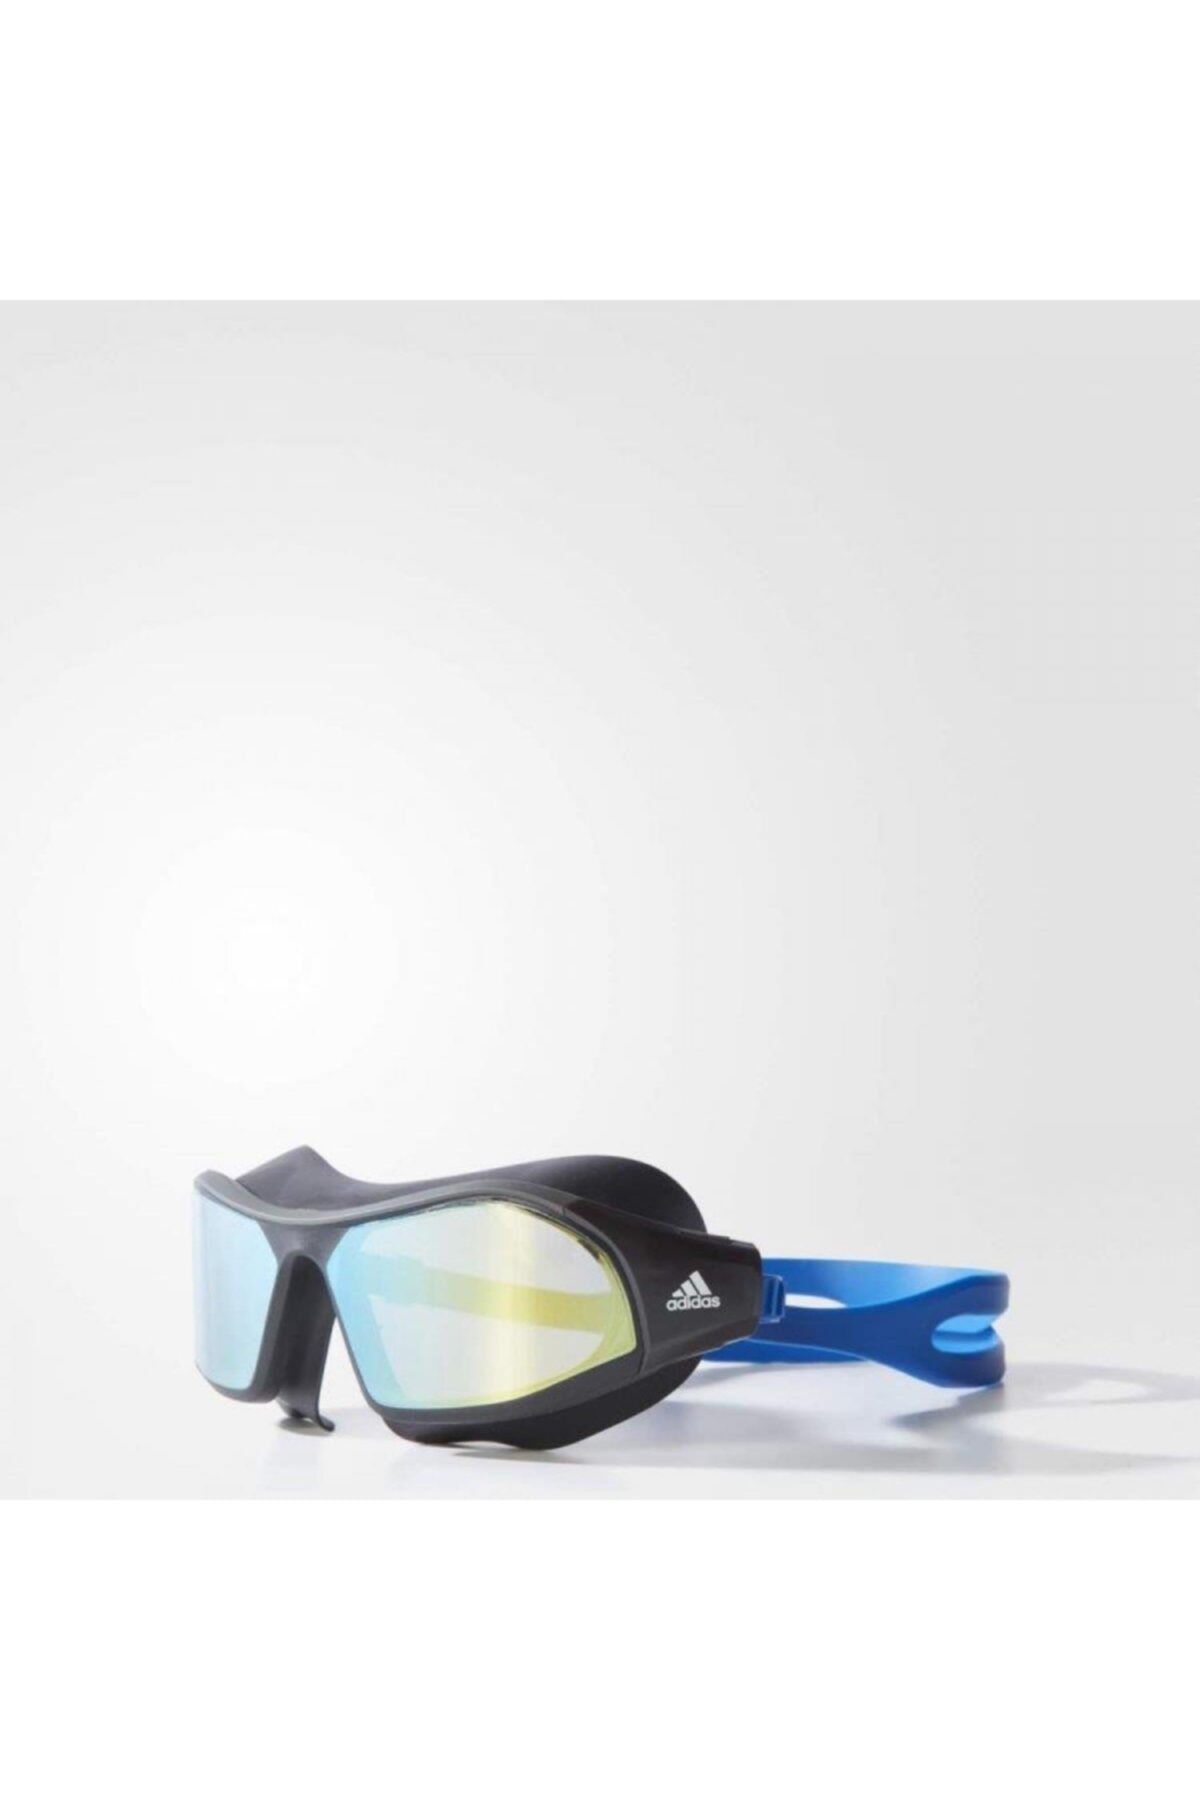 adidas Persistar 180 Mask Mırrored Yüzücü Gözlüğü Br5808